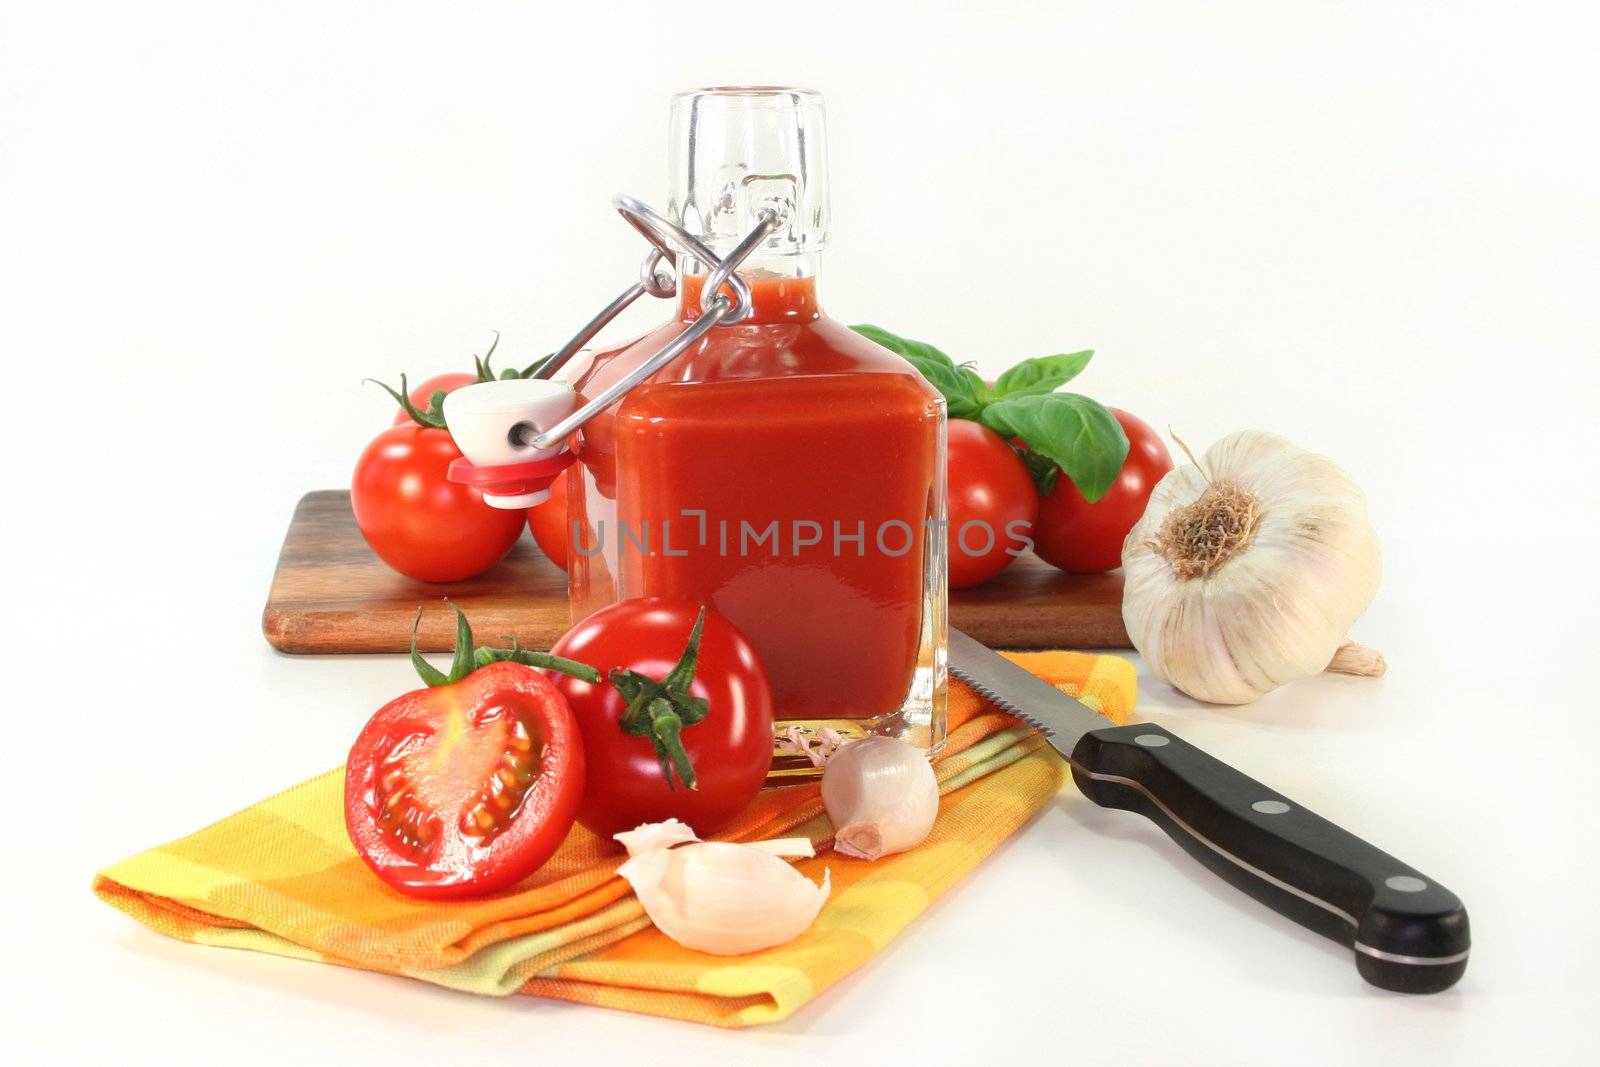 Tomato Ketchup by silencefoto